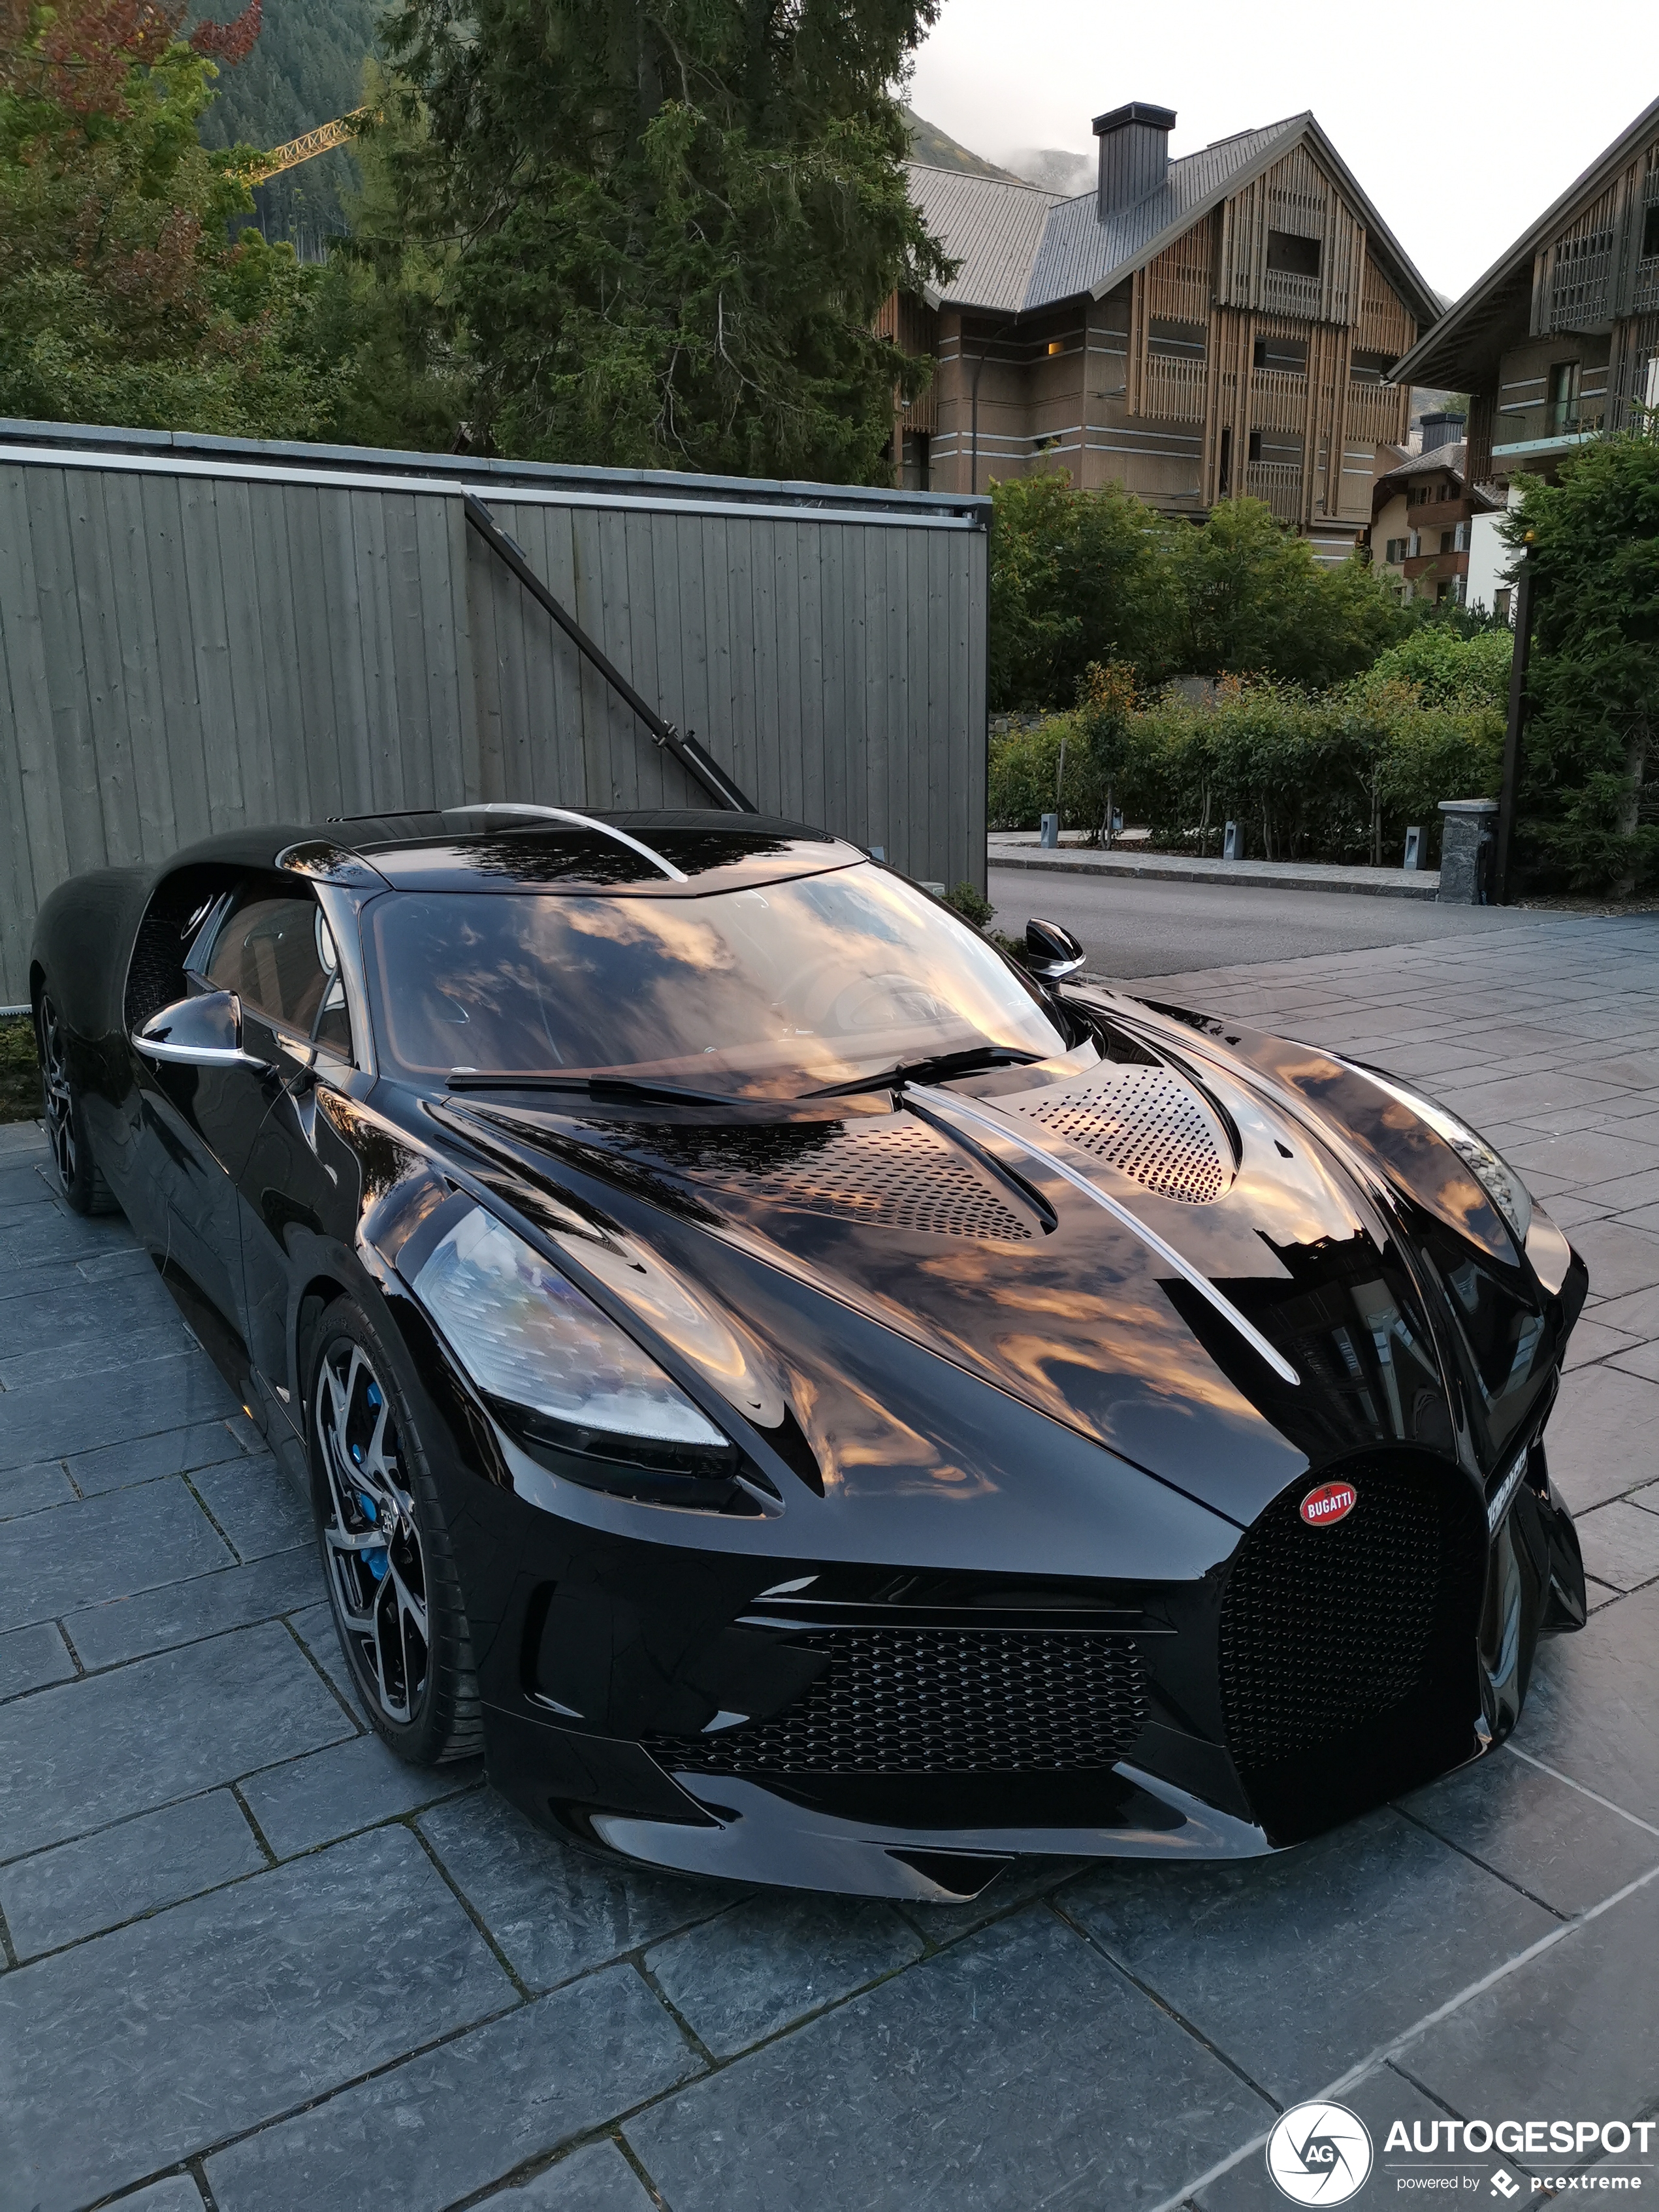 Bugatti La Voiture Noire shows up in Andermatt